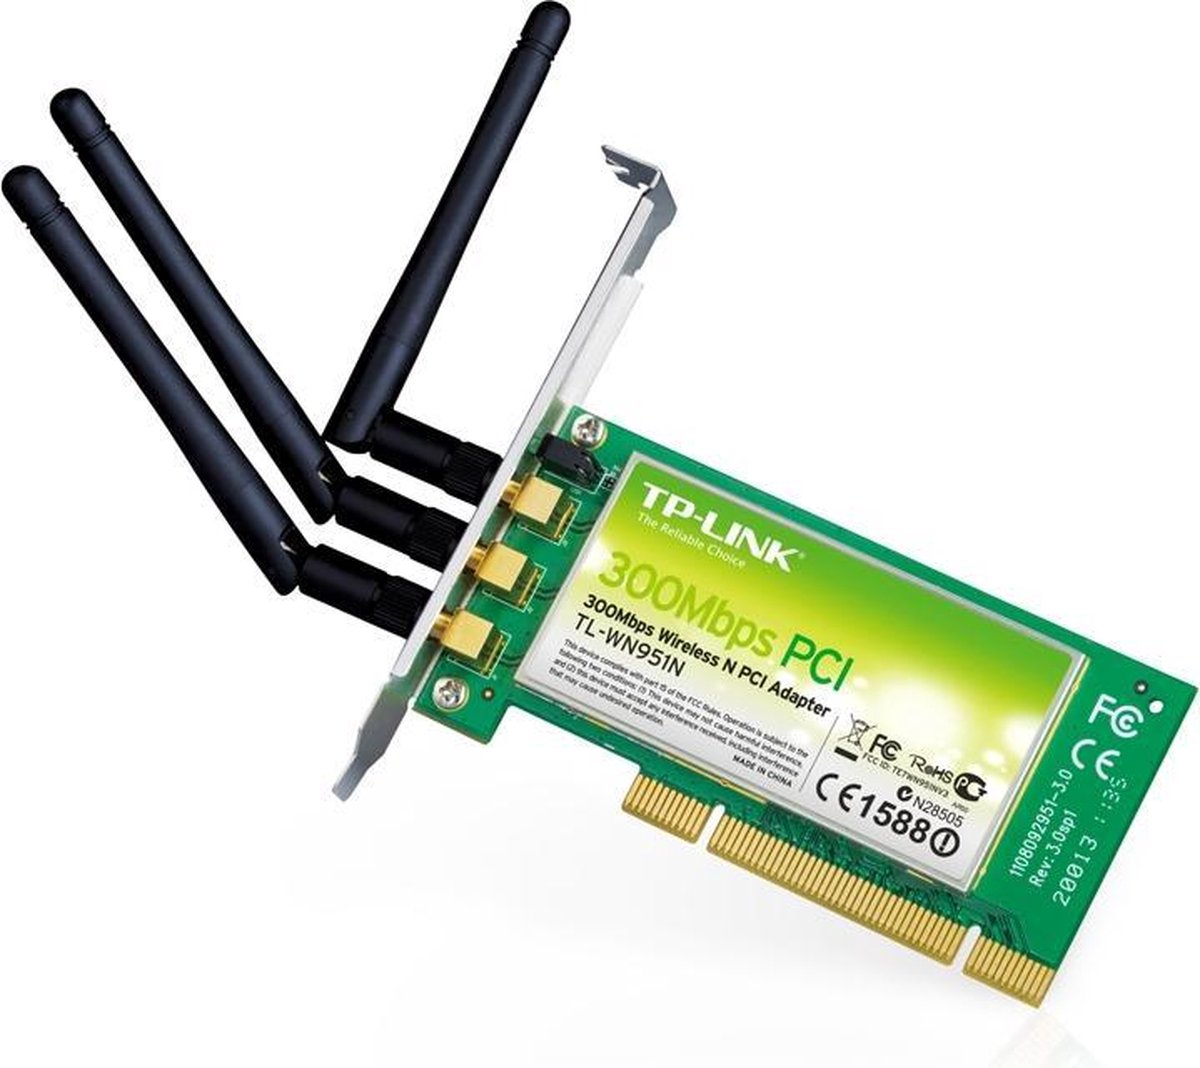 TP-LINK TL-WN951 N 300 M Wireless PCI Adapter